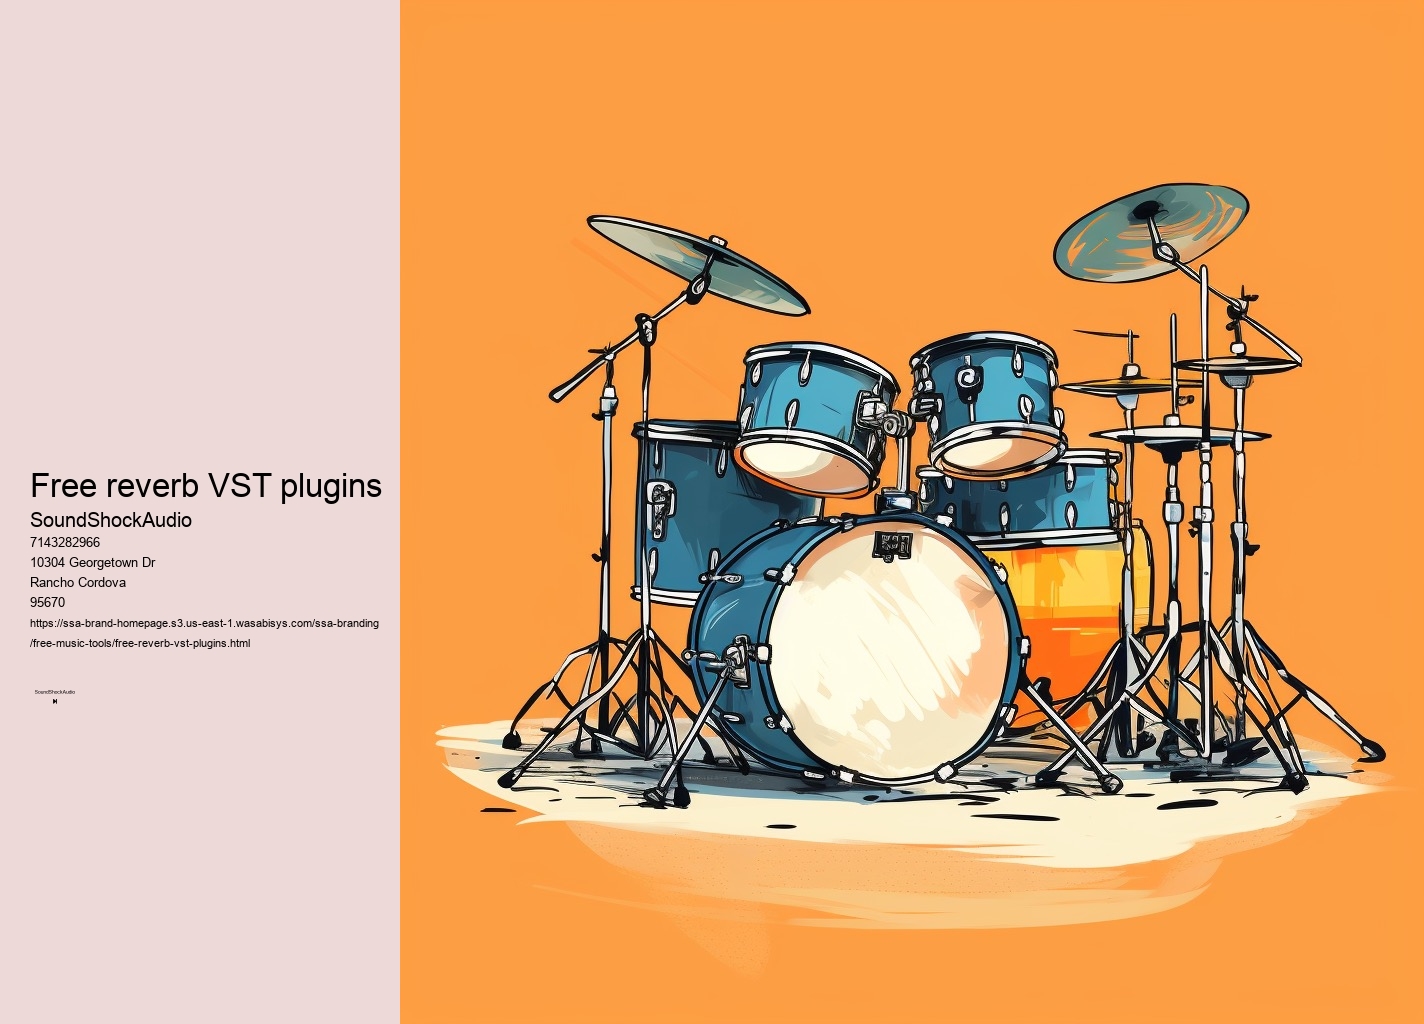 orchestral VST plugins free